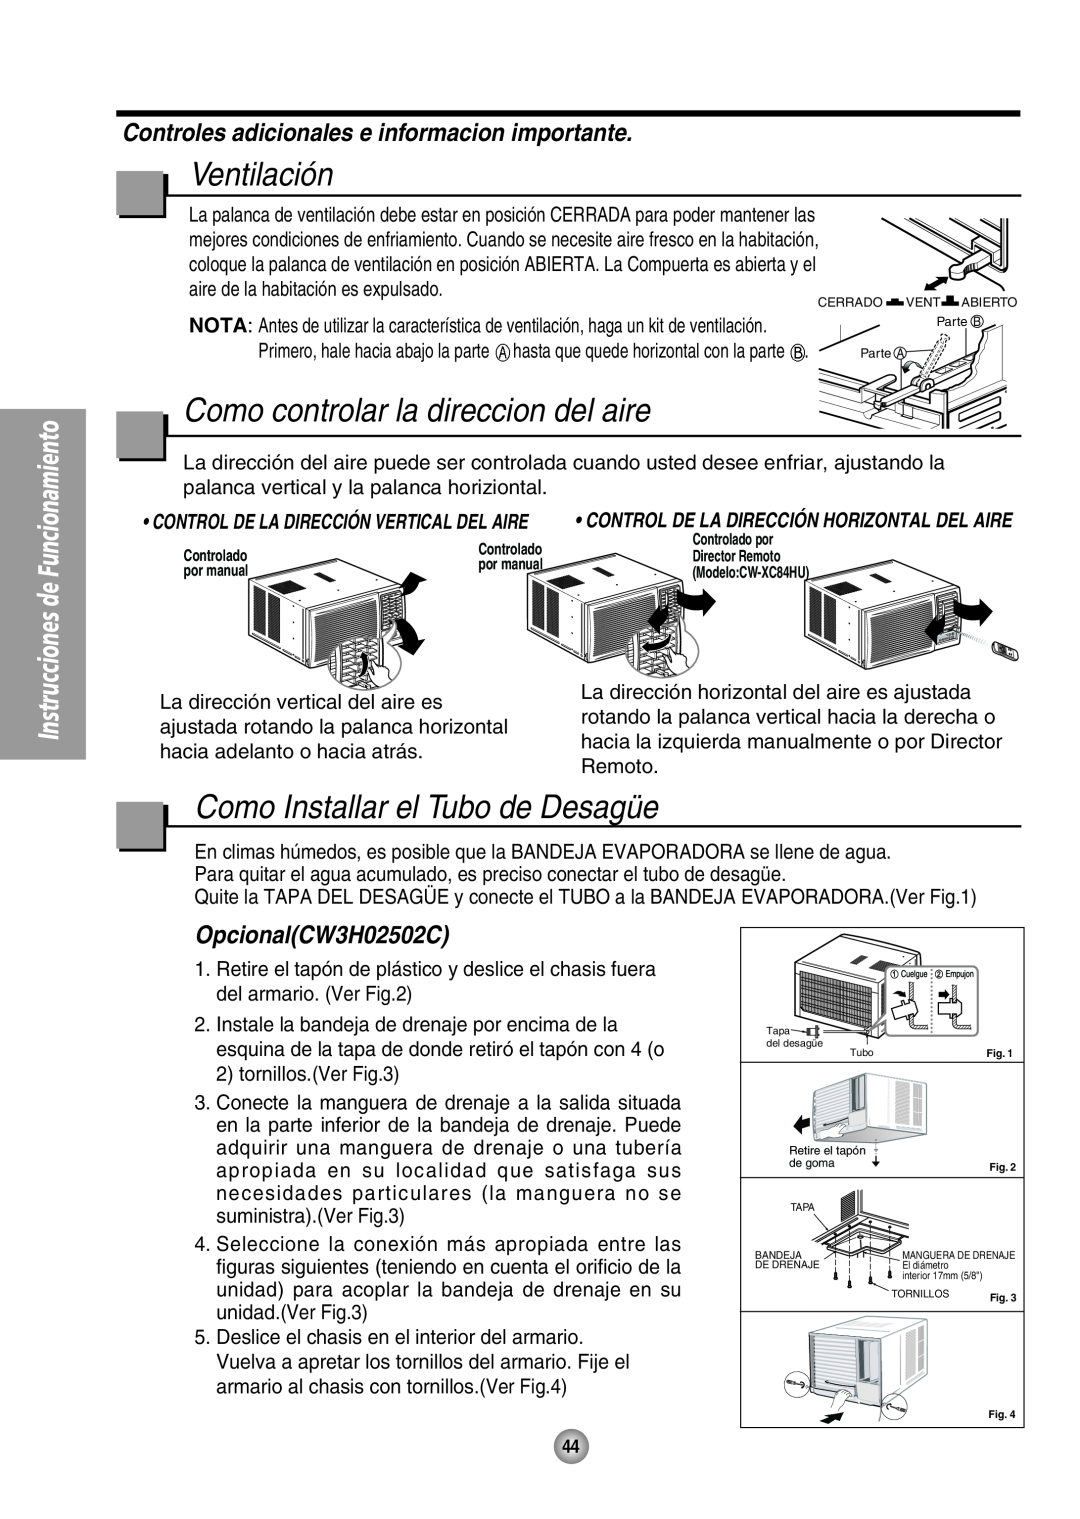 Panasonic CW-XC64HU manual Ventilación, Como controlar la direccion del aire, Como Installar el Tubo de Desagüe 